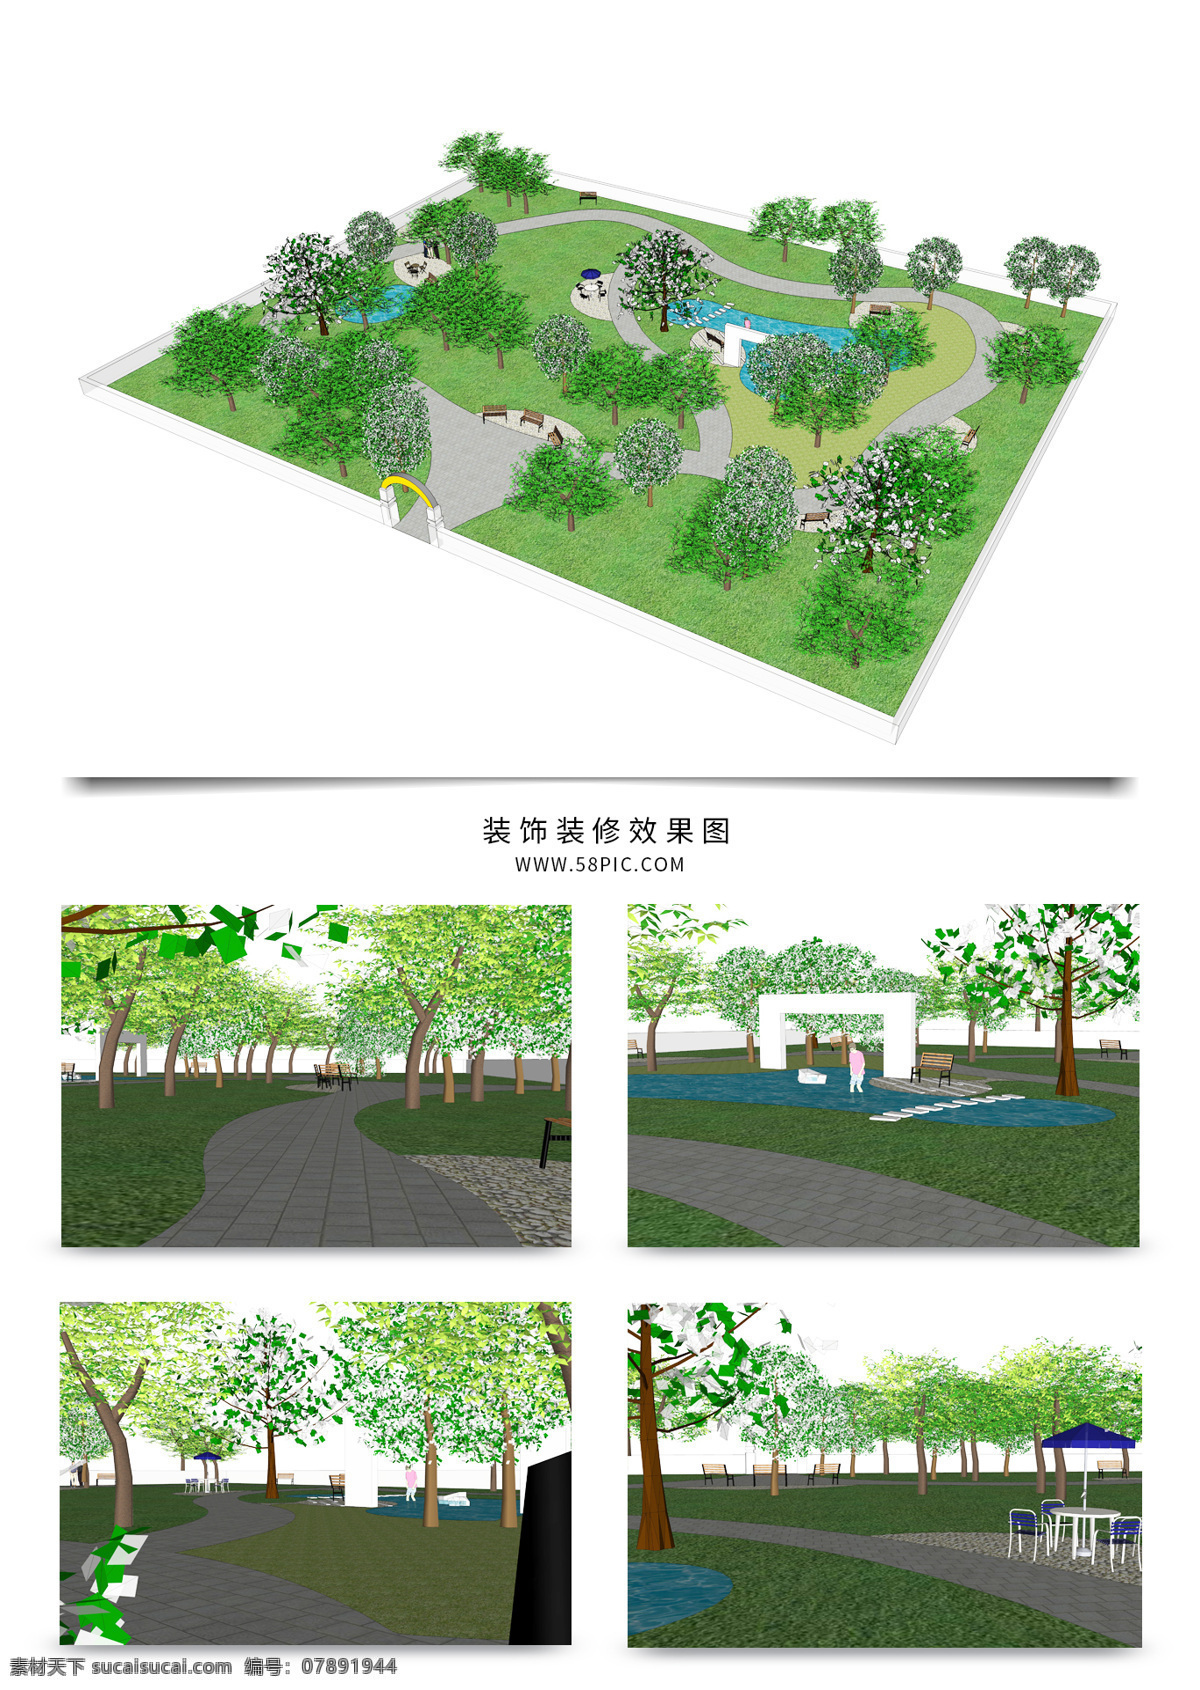 公园 景观 方案 su 模型 规划设计 园林 sketchup 草图 大师 景观规划 建筑装饰 设计素材 景观规划设计